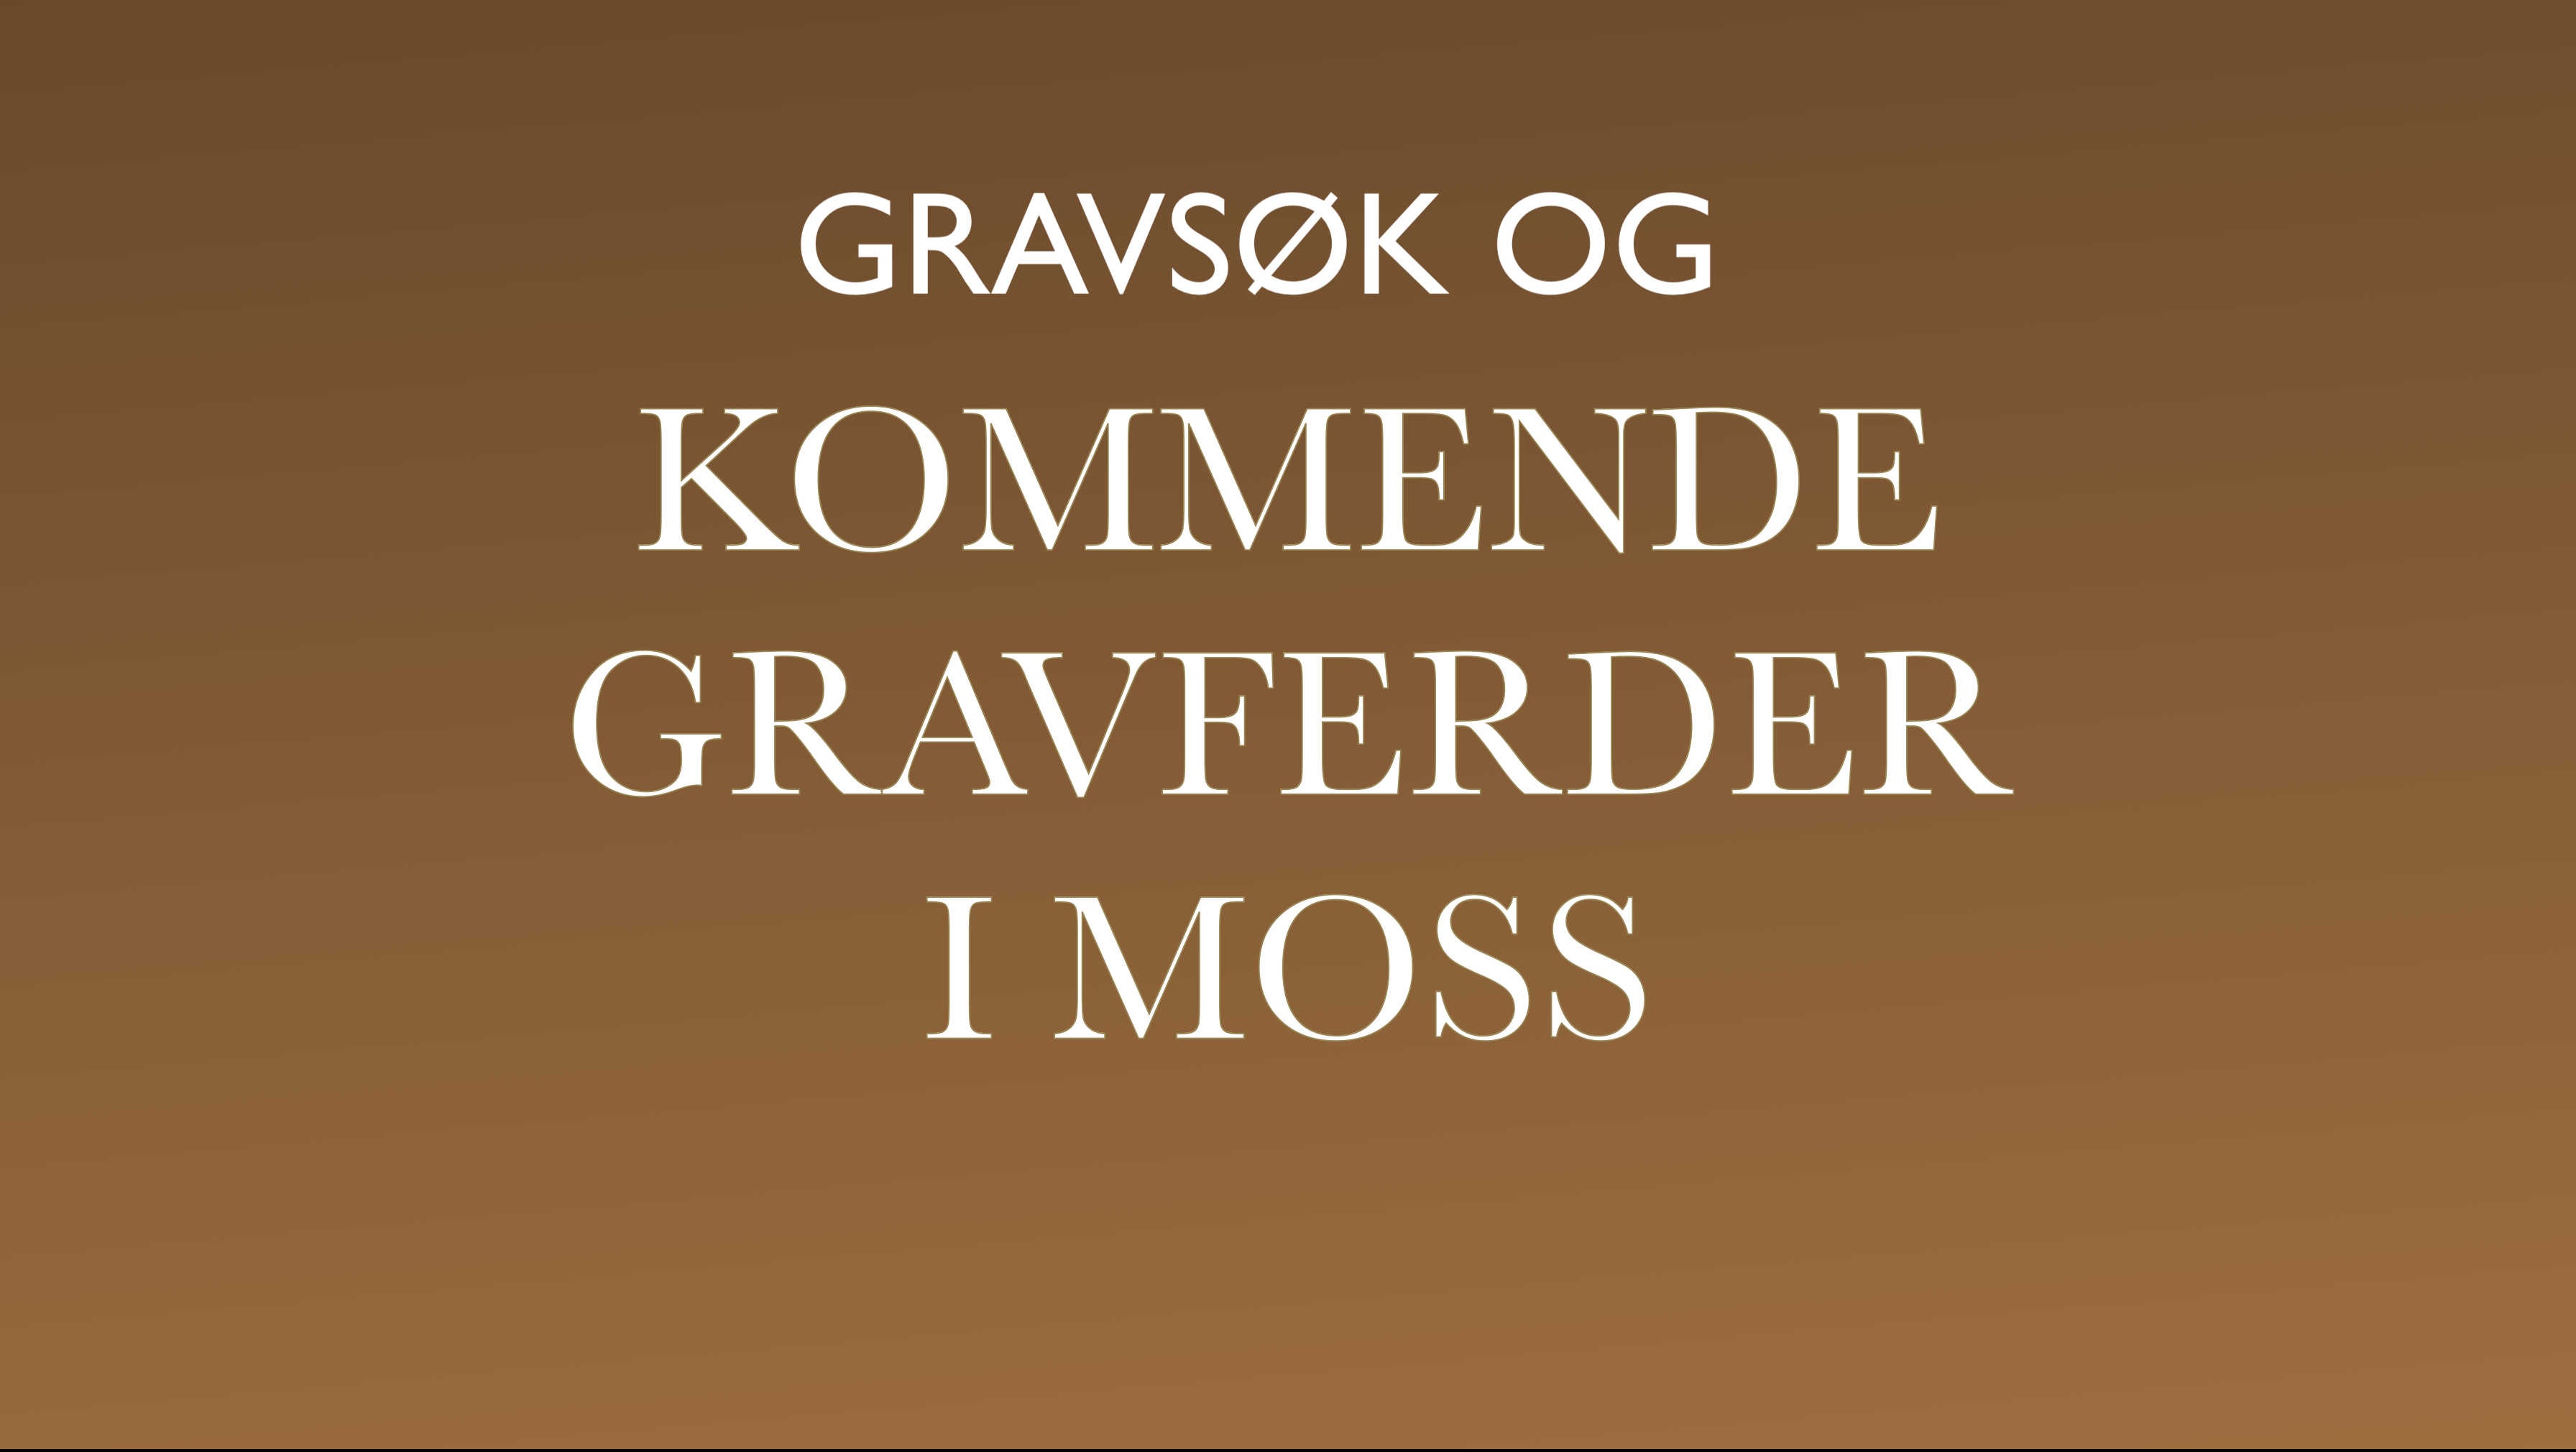 Gravsøk og Kommende gravferder i Moss